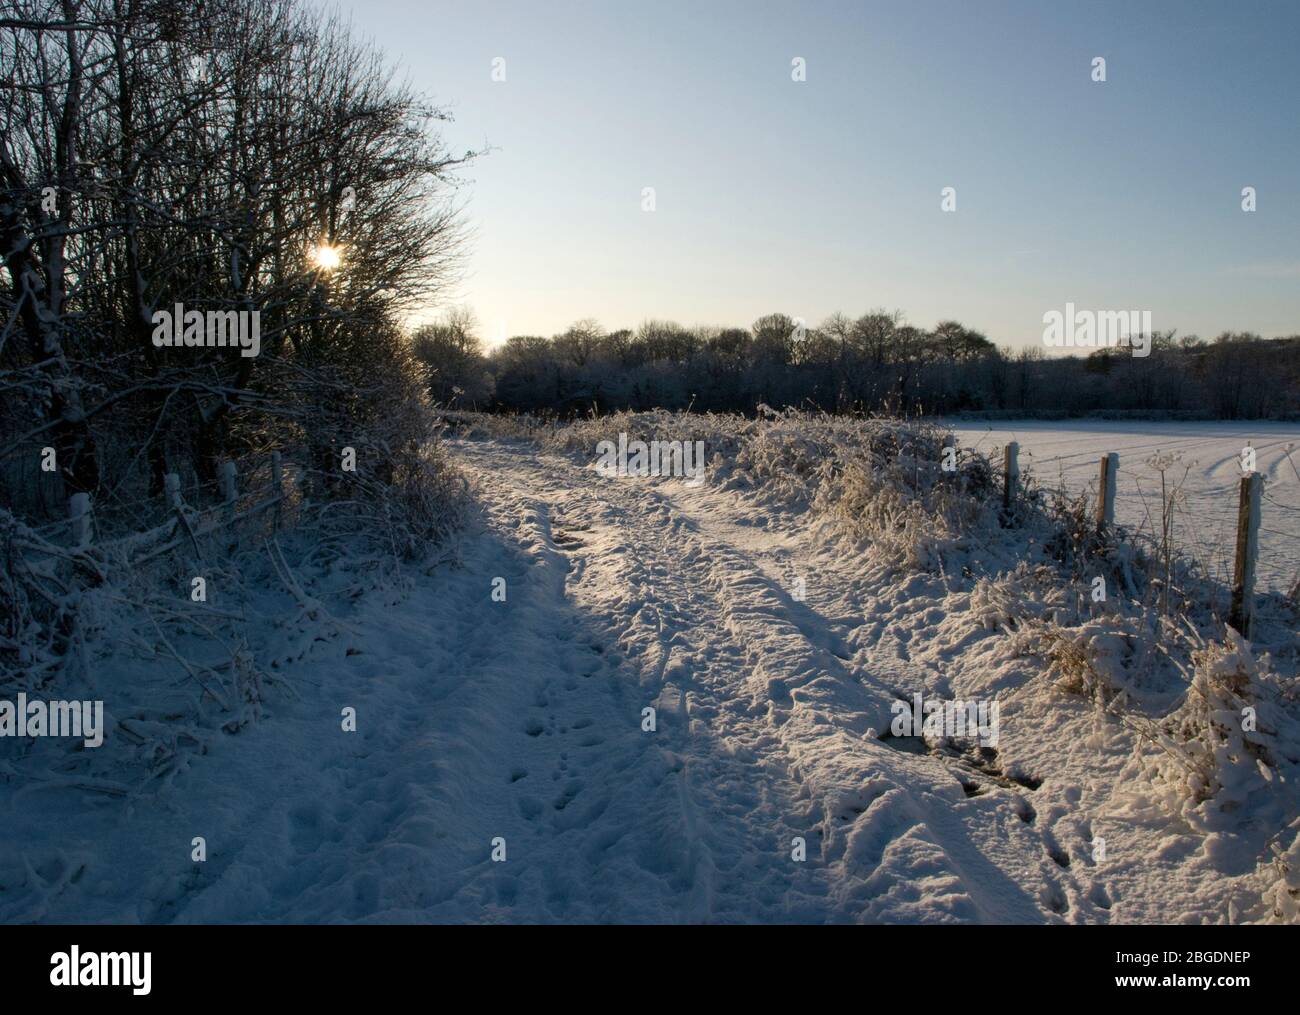 Spuren im Schnee entlang geschwungenen Pfad mit niedriger Sonne durch Bäume werfen und Hervorhebung der Weg und Vegetation mit einem klaren blauen Himmel gesehen Stockfoto